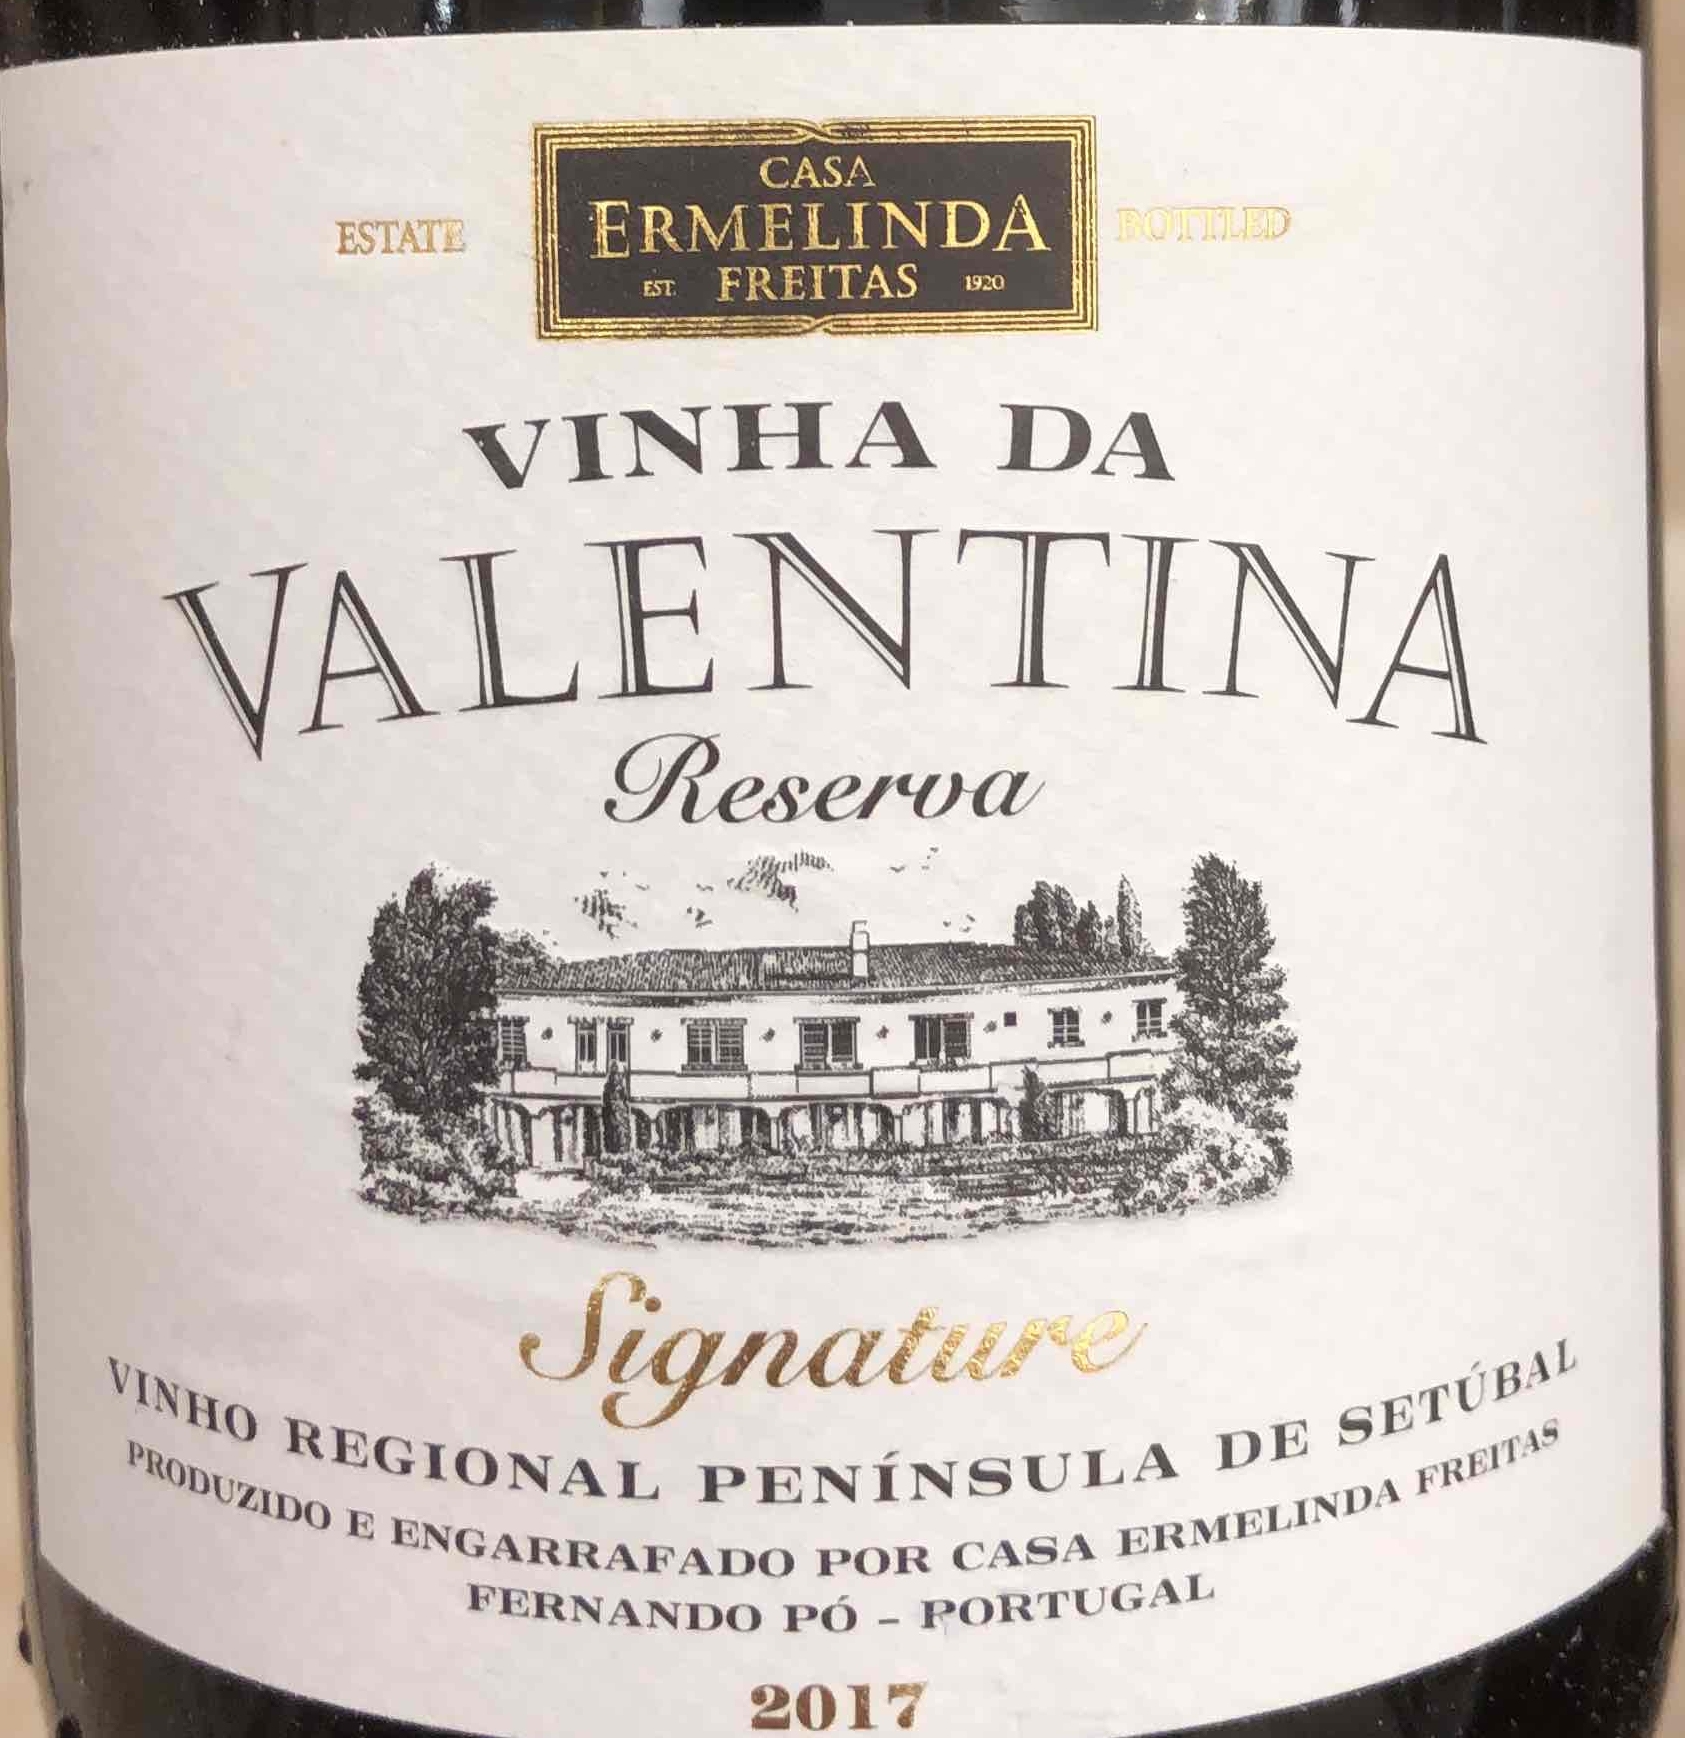 Casa Ermelinda Freitas Vinha Peninsula Setubal, Tinto, Reserva de da Valentina Signature Portugal-埃尔梅琳达·弗雷塔斯之家酒庄葡萄酒-价格-评价-中文名-红酒世界网